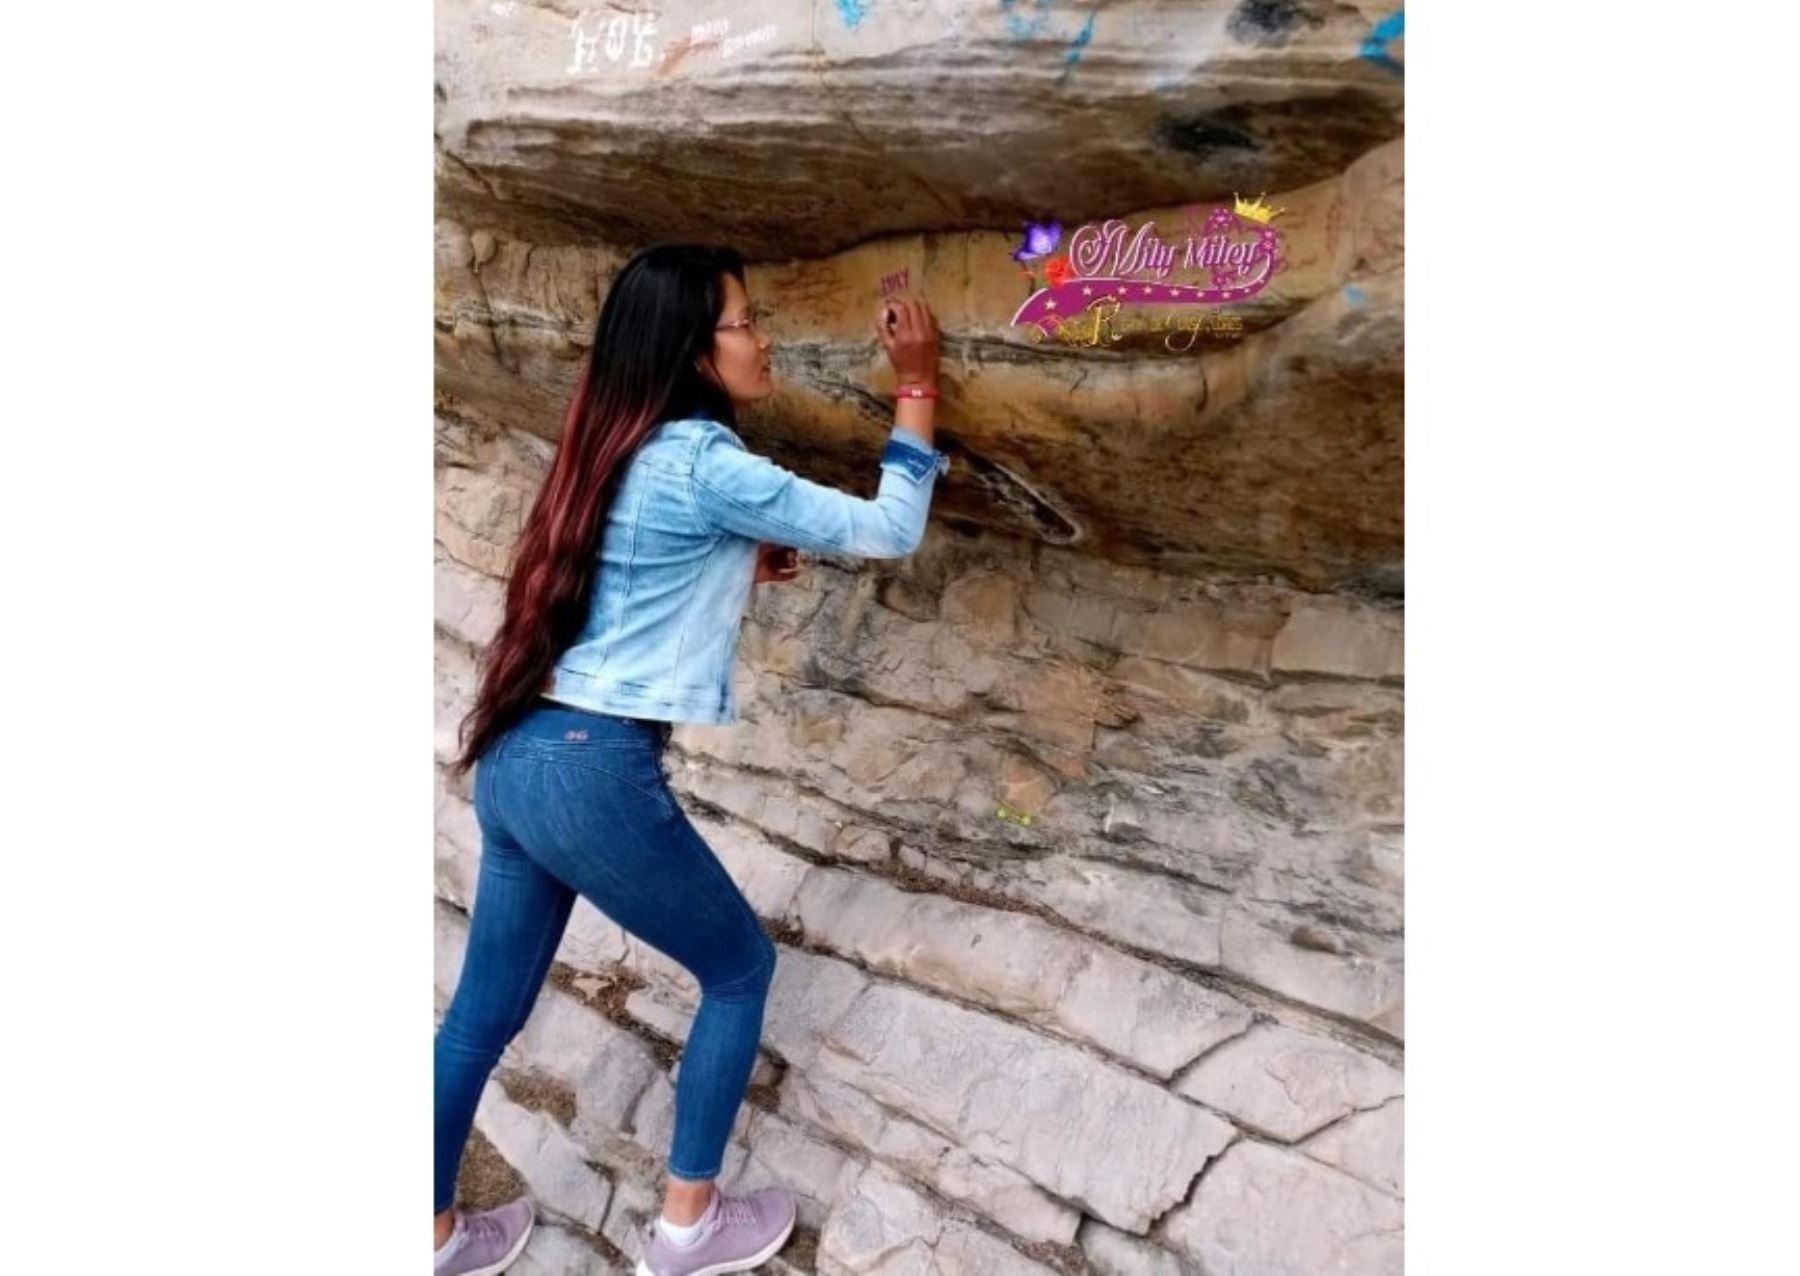 La Dirección Desconcentrada de Cultura de Áncash denunció que una joven realizó pintas en la zona de pinturas rupestres de Pintay Punta, ubicada en el distrito de San Marcos.